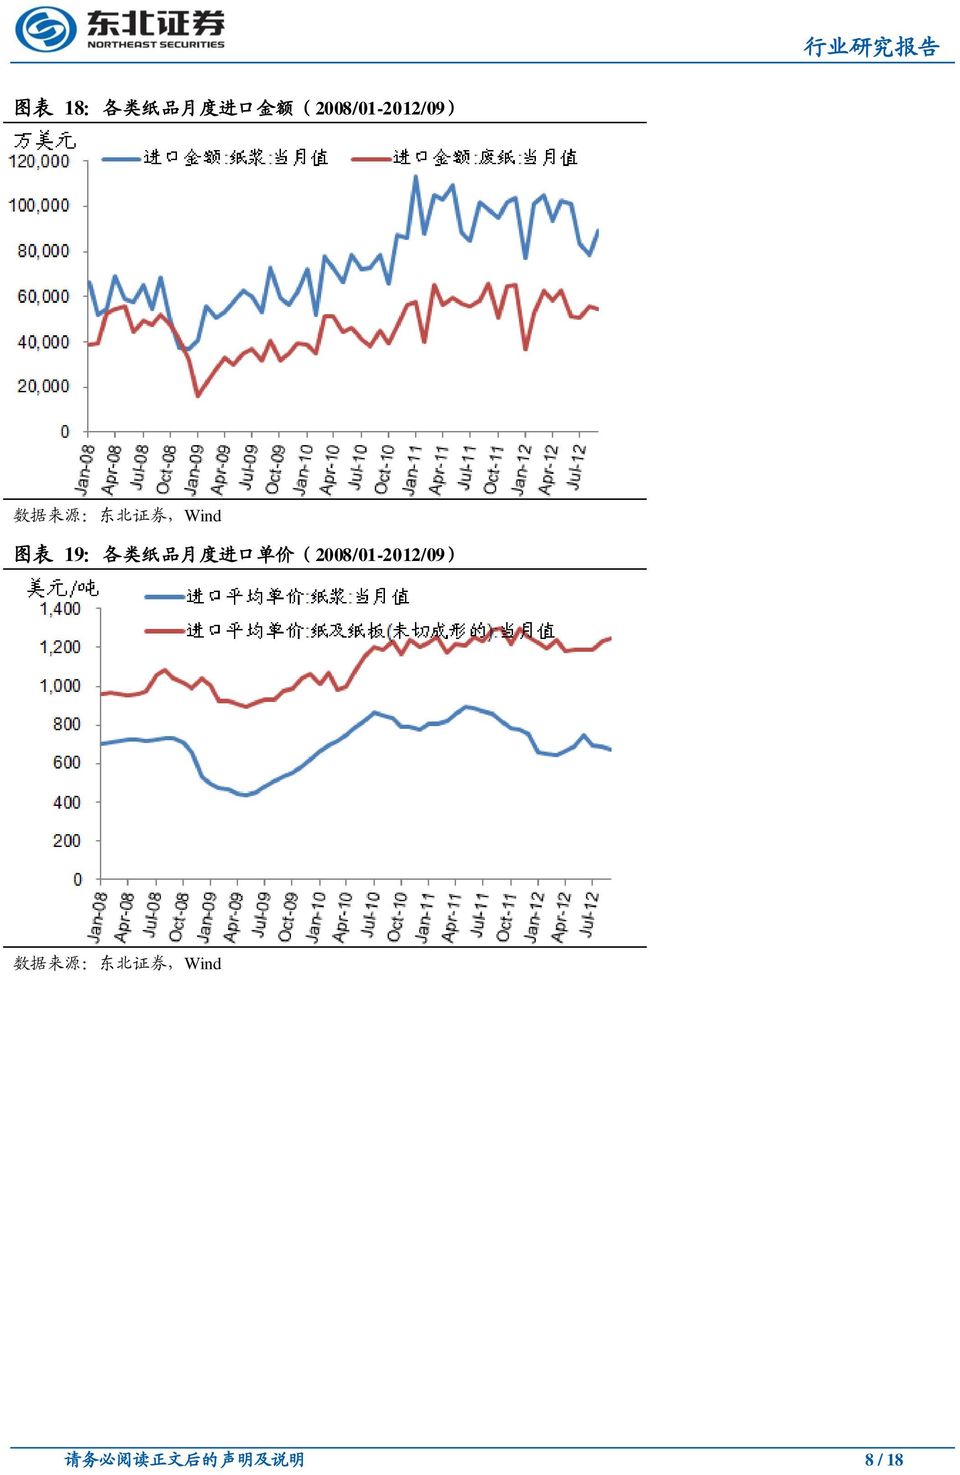 品 月 度 进 口 单 价 (2008/01-2012/09)